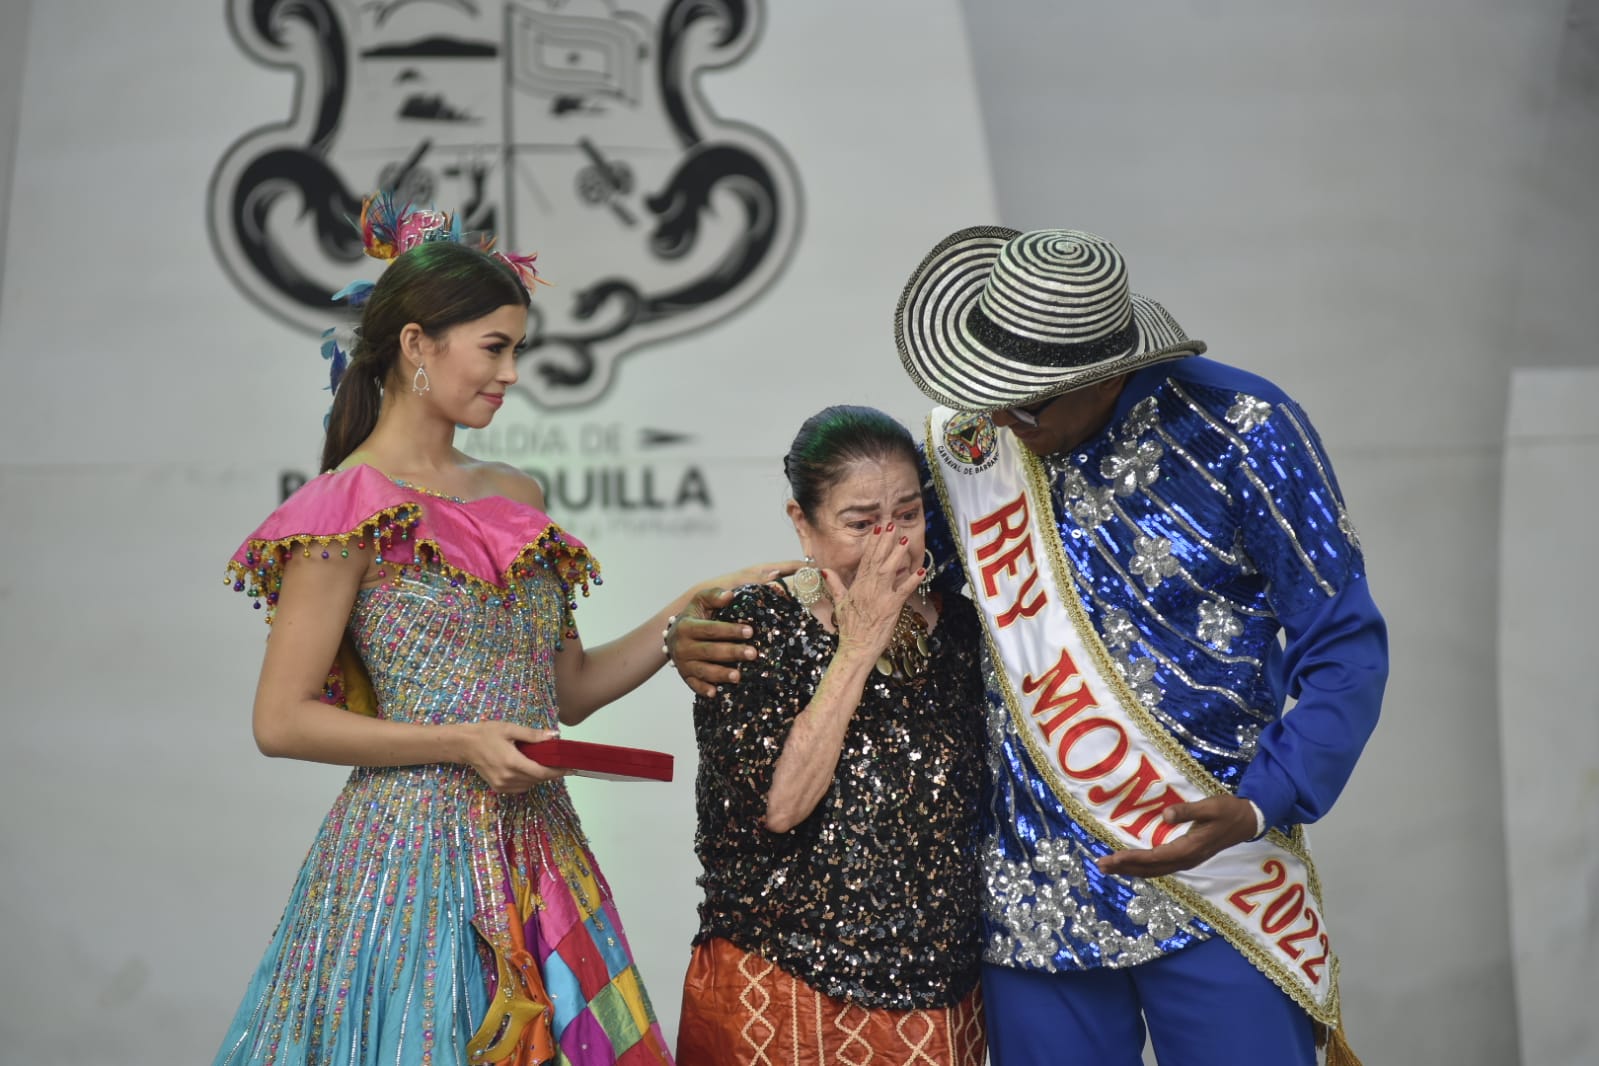 Gloria Peña se mostró conmovida por el homenaje del Carnaval a su trayectoria.